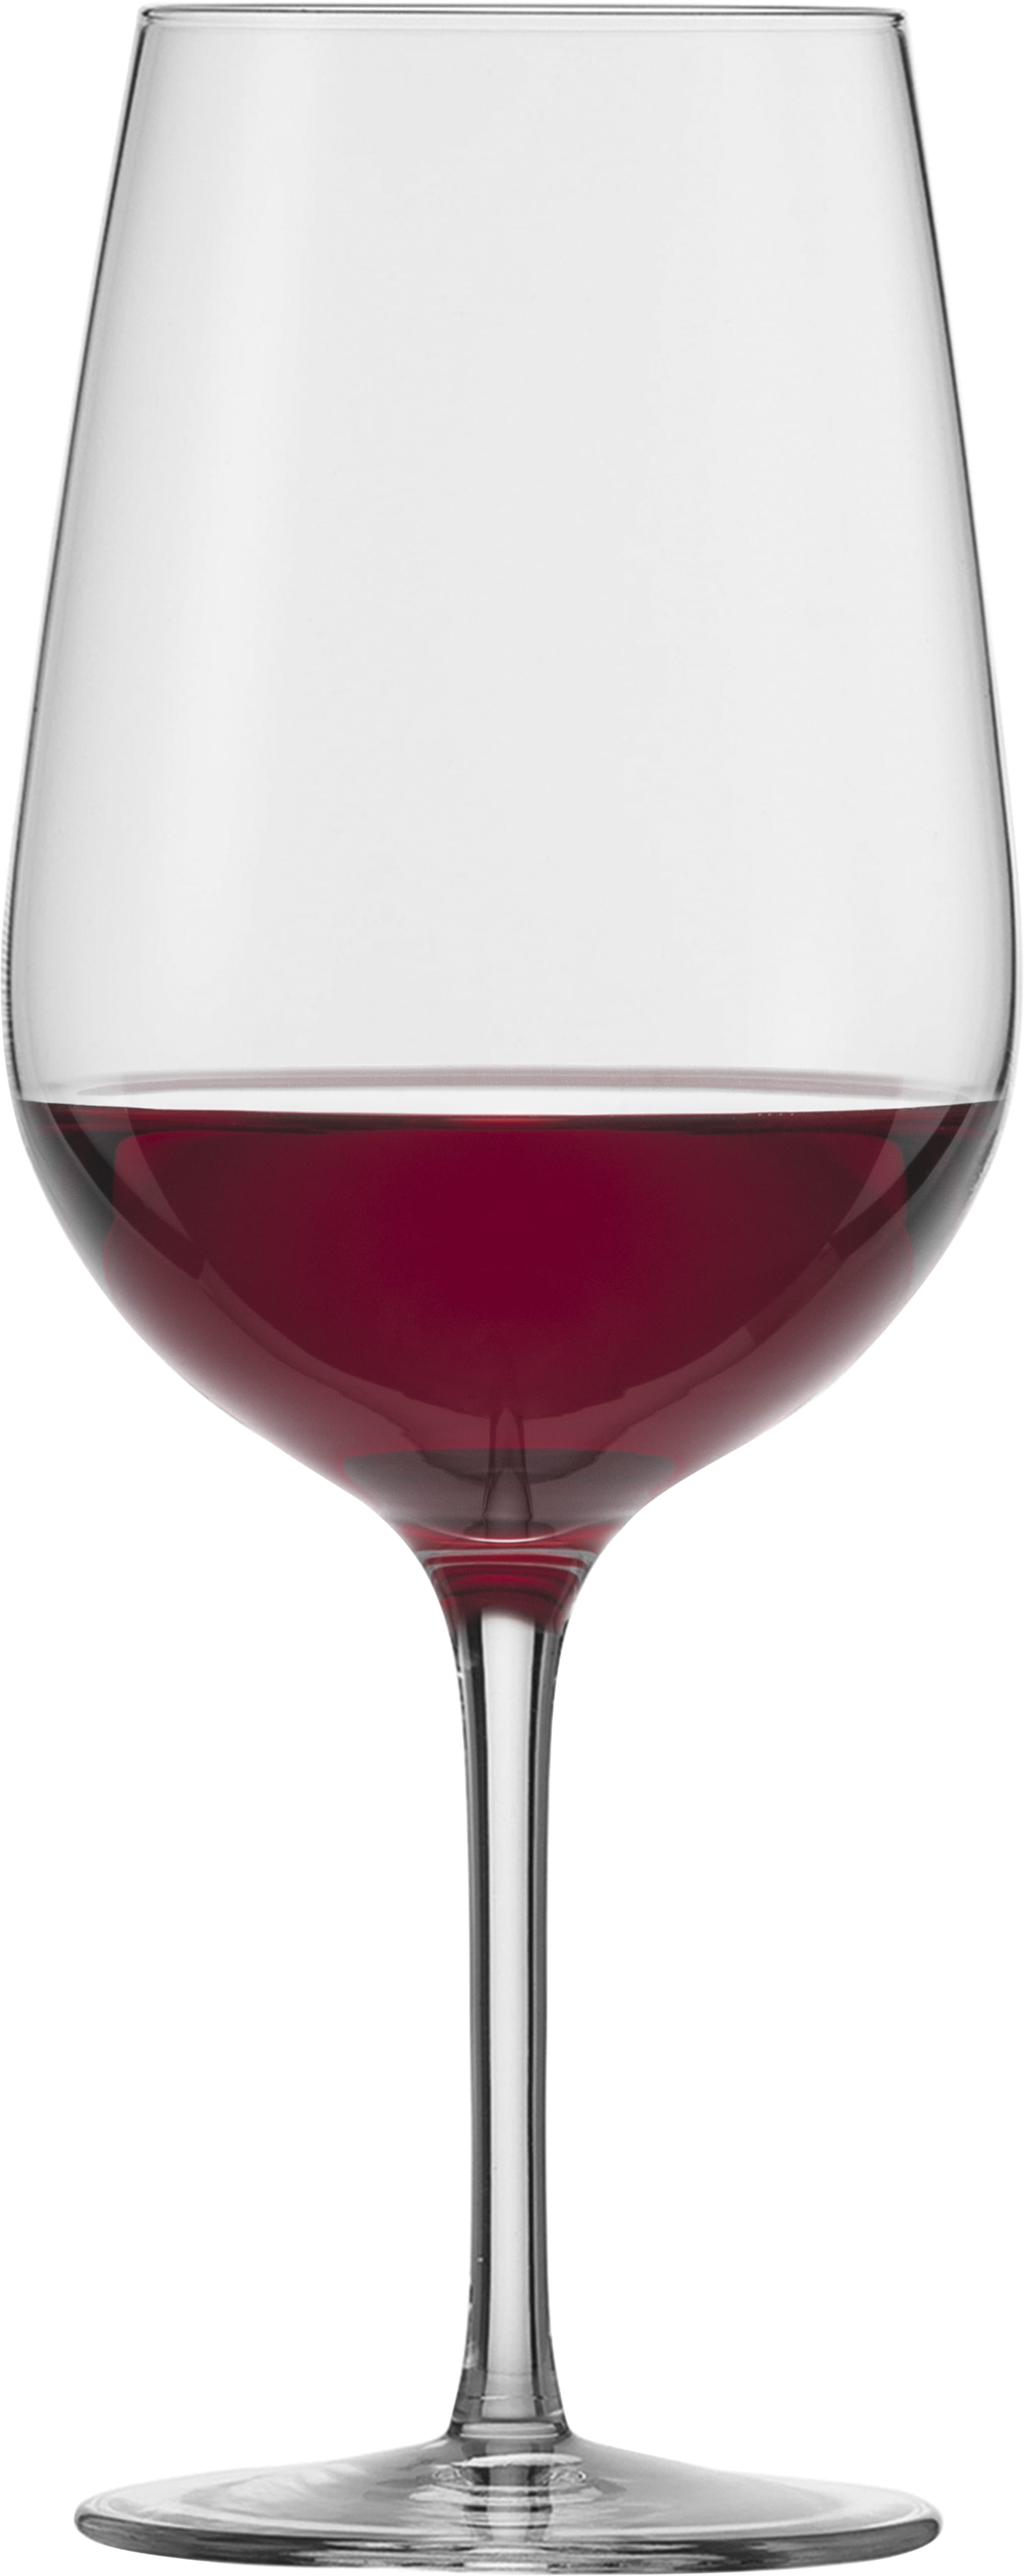 Eisch Glas Vinezza Bordeauxglas 550/0 - 4 Stück im Geschenkkarton